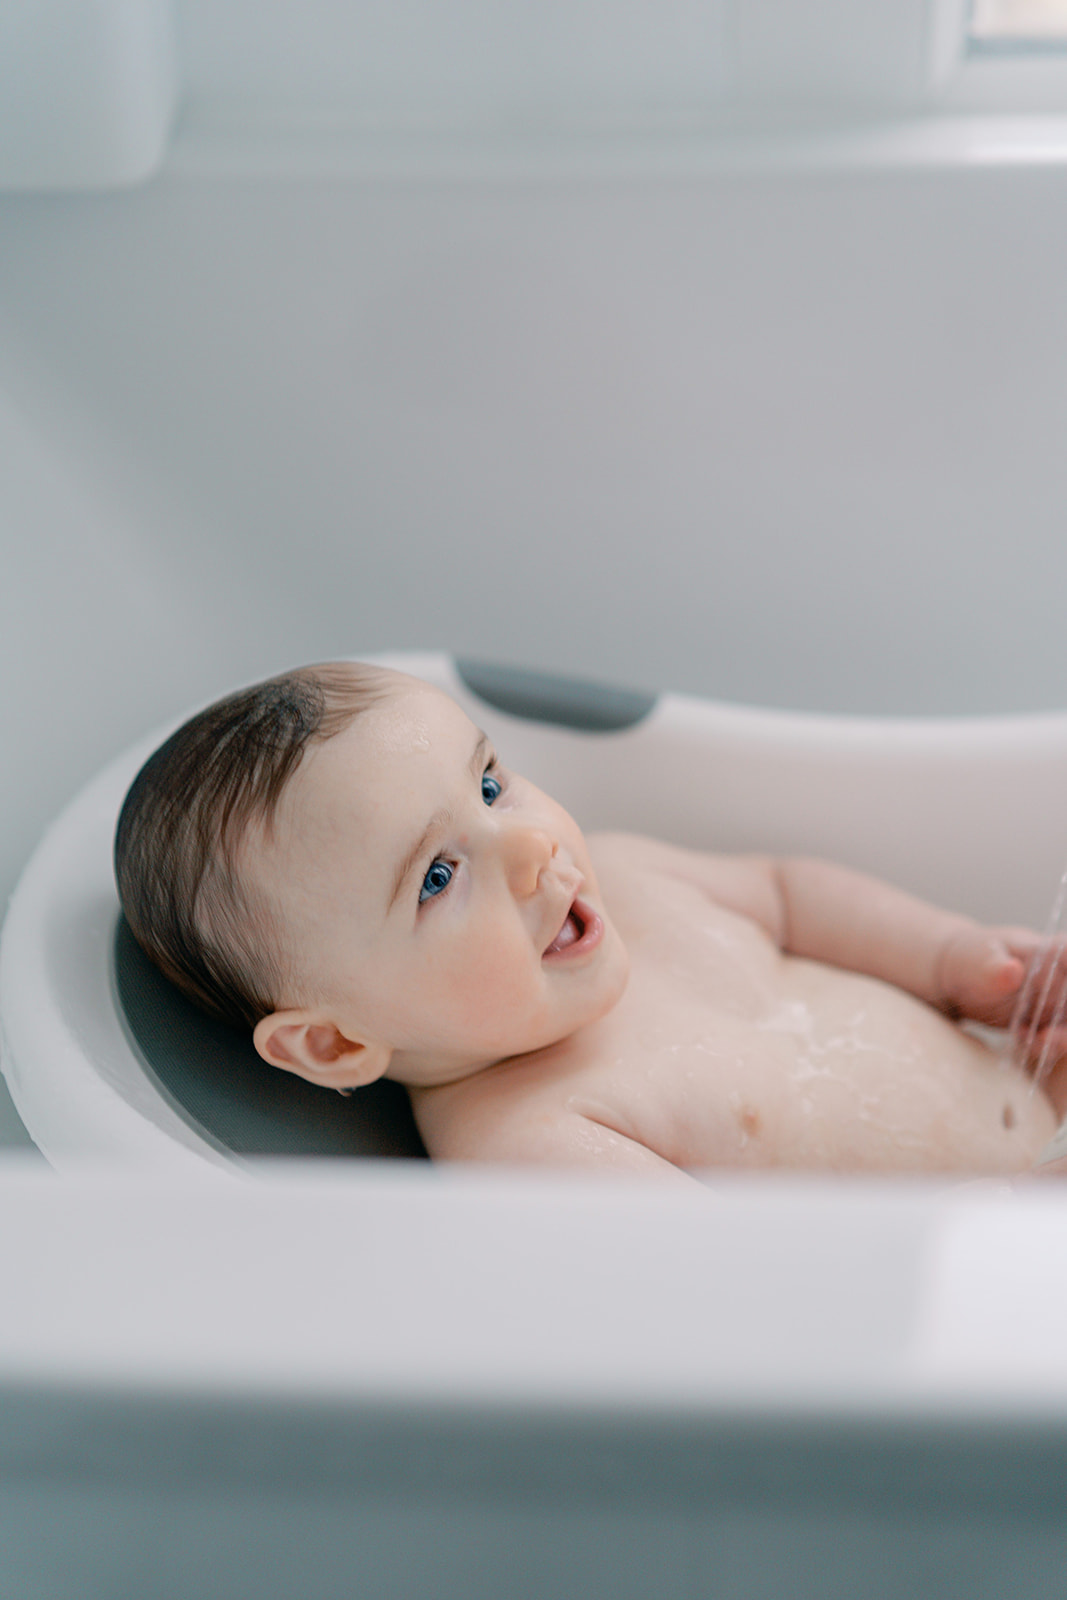 Séance naissance lifestyle Sain Mandé Val de Marne avec un bébé de 8 mois, le moment du bain.